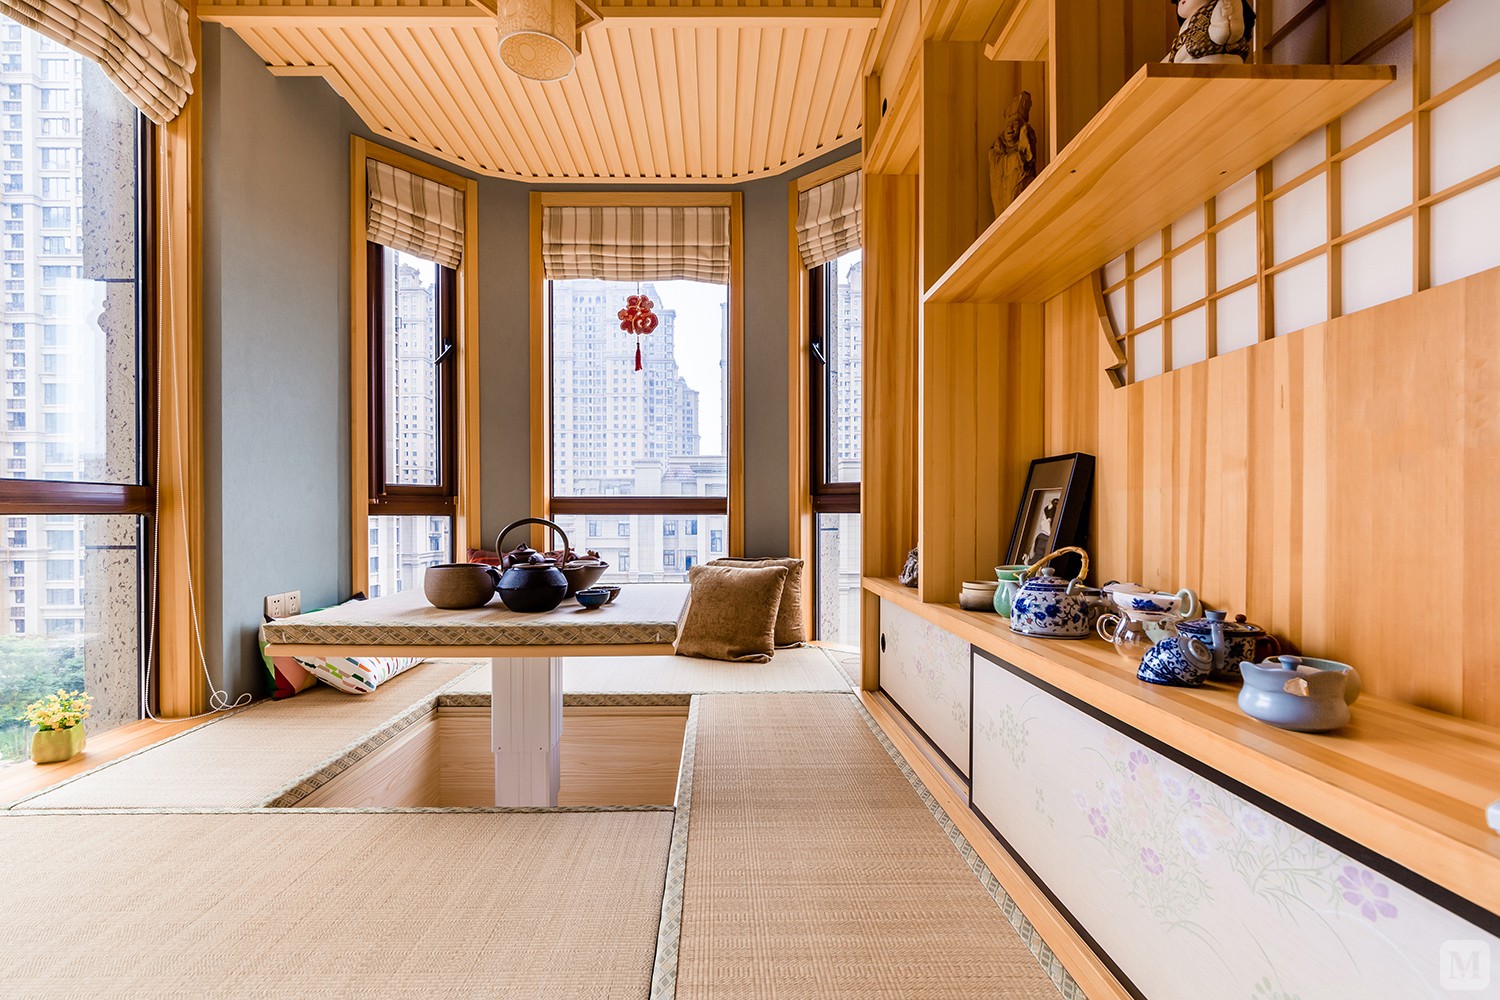 以美式复古风为主，特别之处在于阳台的左侧一间不规则的房间被打造成为一个日式风的榻榻米屋，与美式风格完美结合。